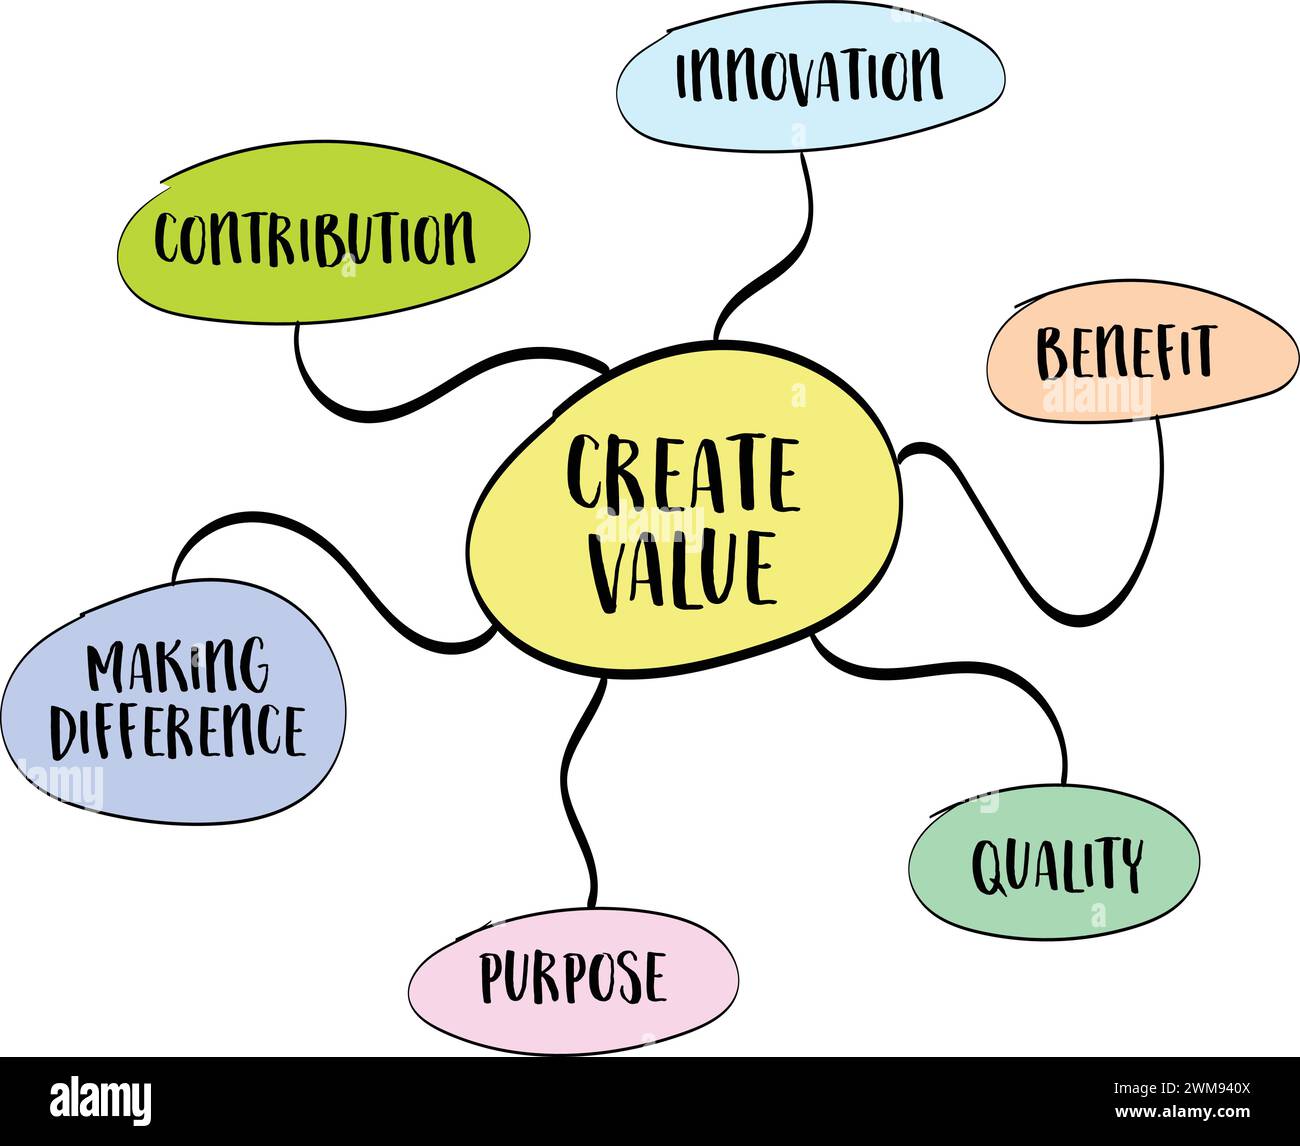 creare valore: schizzo della mappa mentale, ispirazione, creatività, contributo, fare la differenza e concetto di business Illustrazione Vettoriale